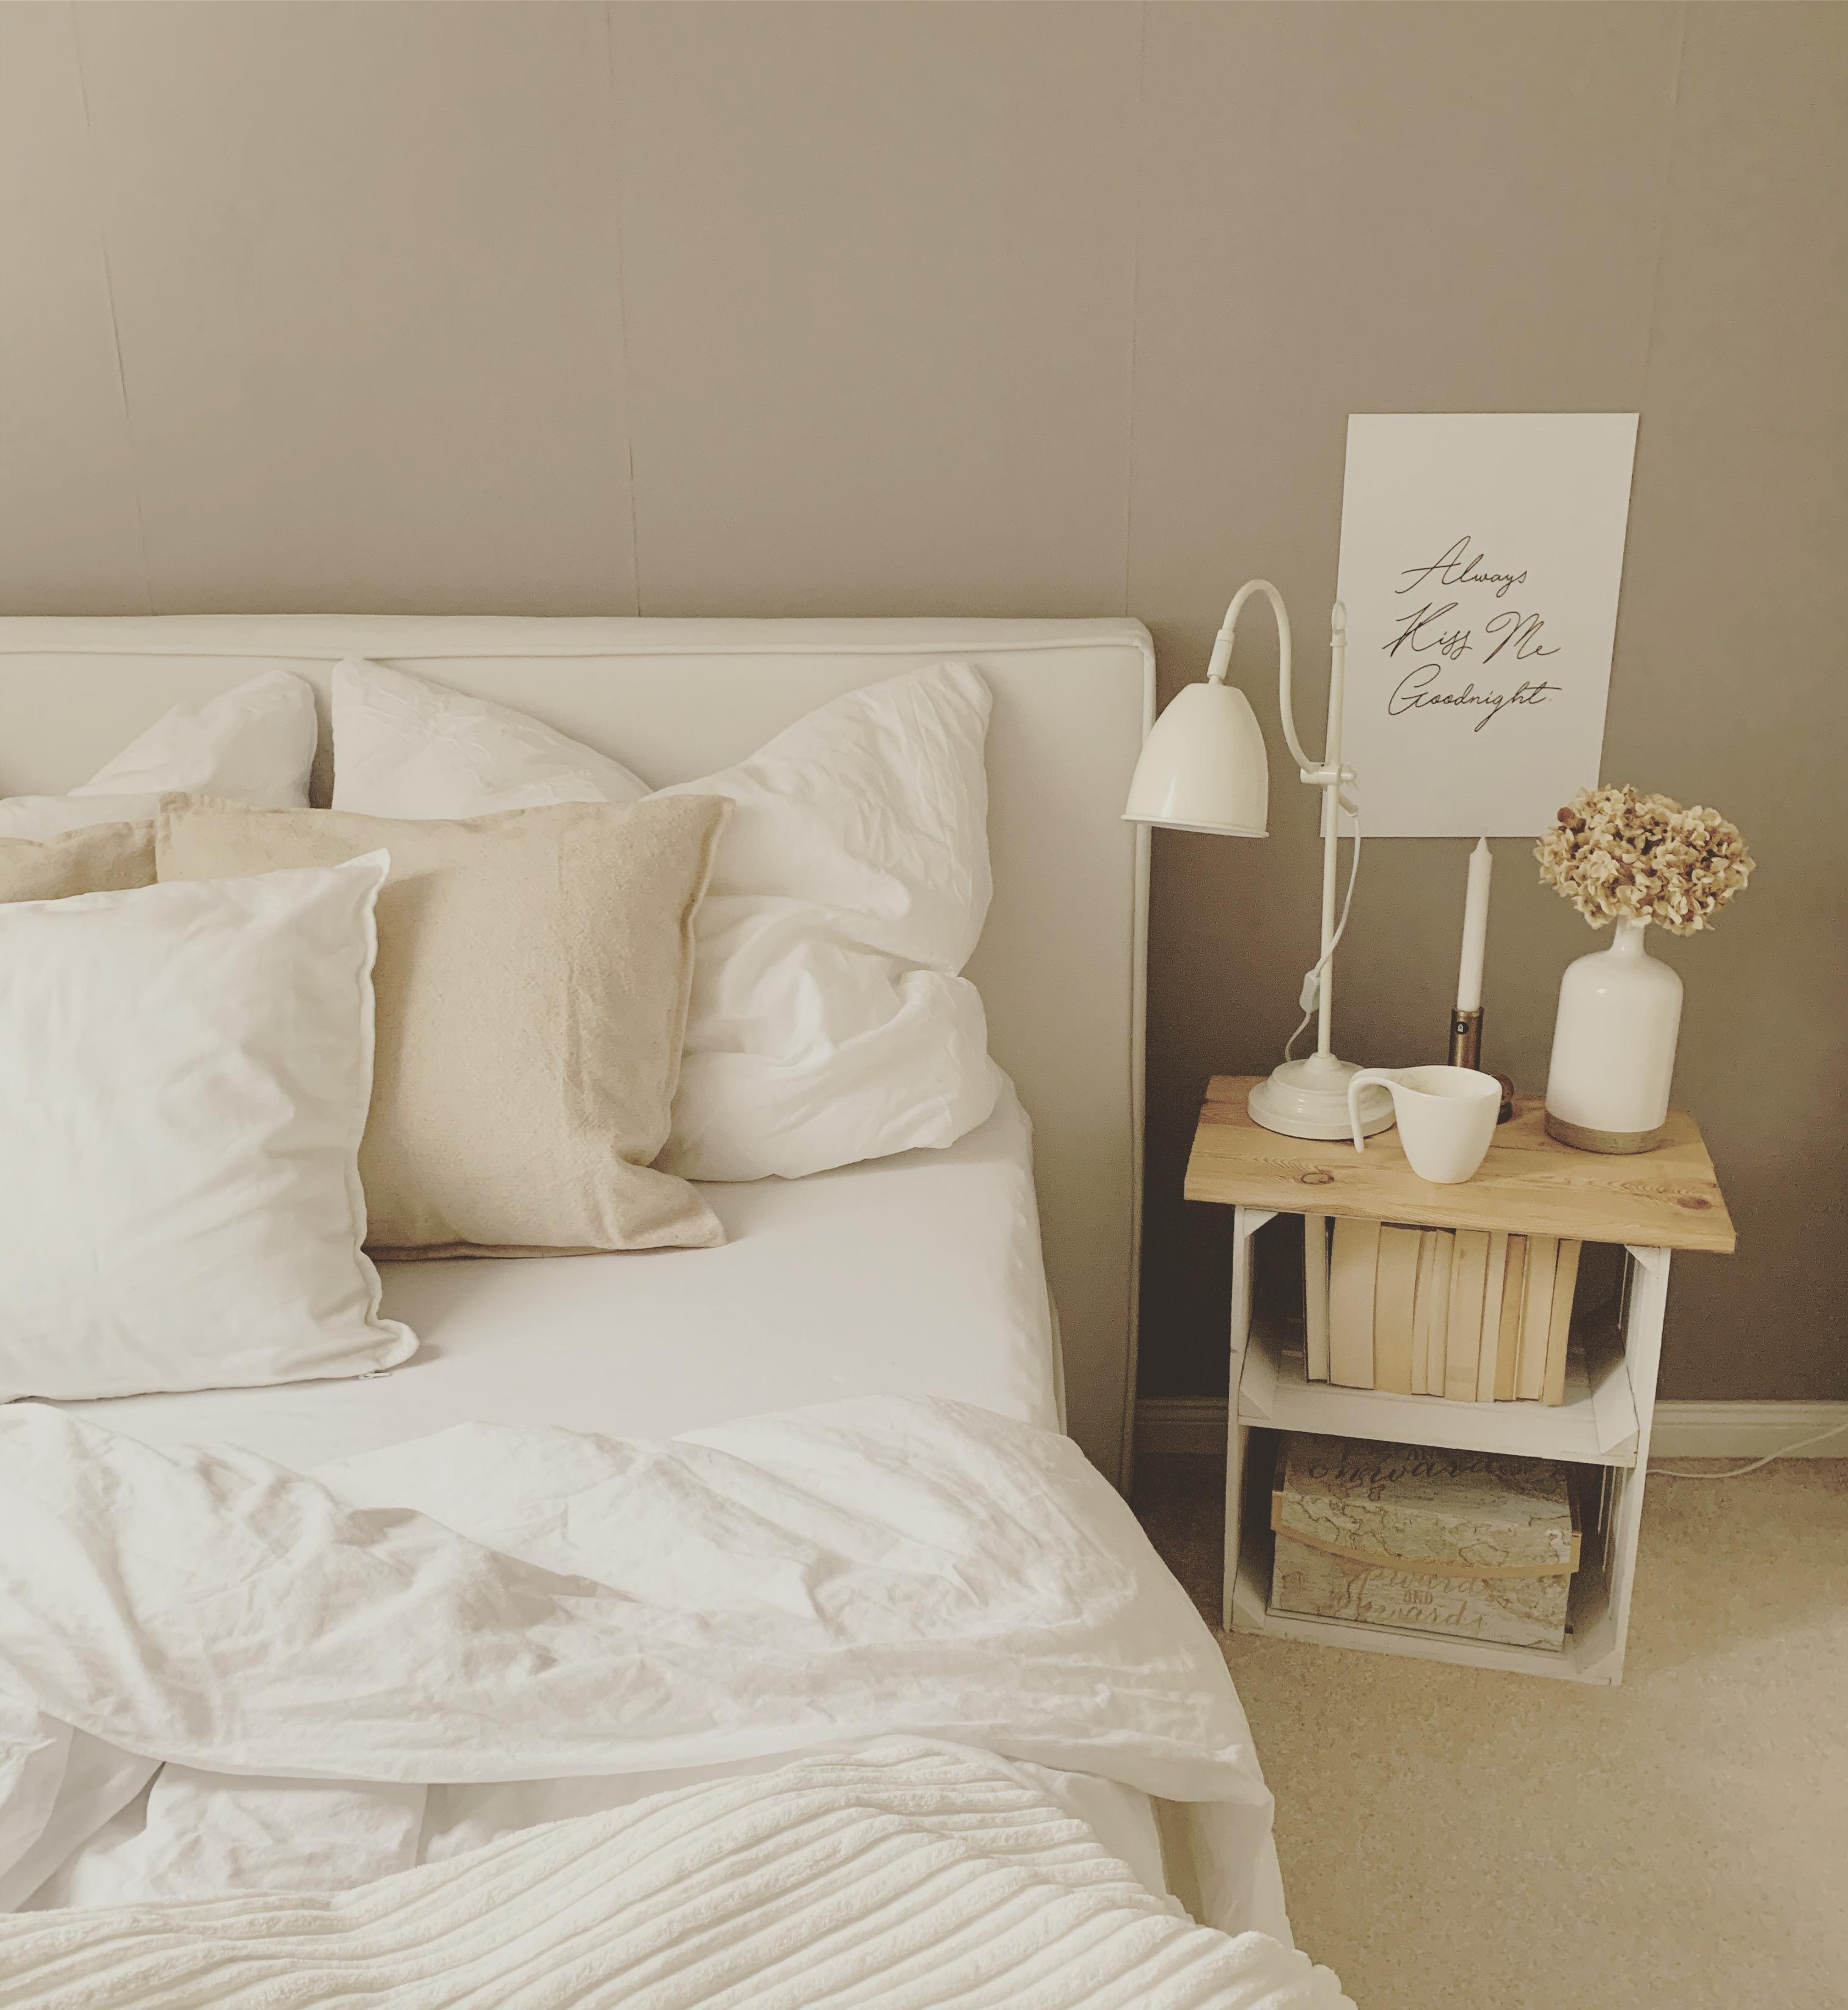 Schlafzimmer make over #schlafzimmer#schlicht#hellefarben#schlafzimmerideen#nachttisch#diy#nachtschrank#bdrm#cozy#hygge